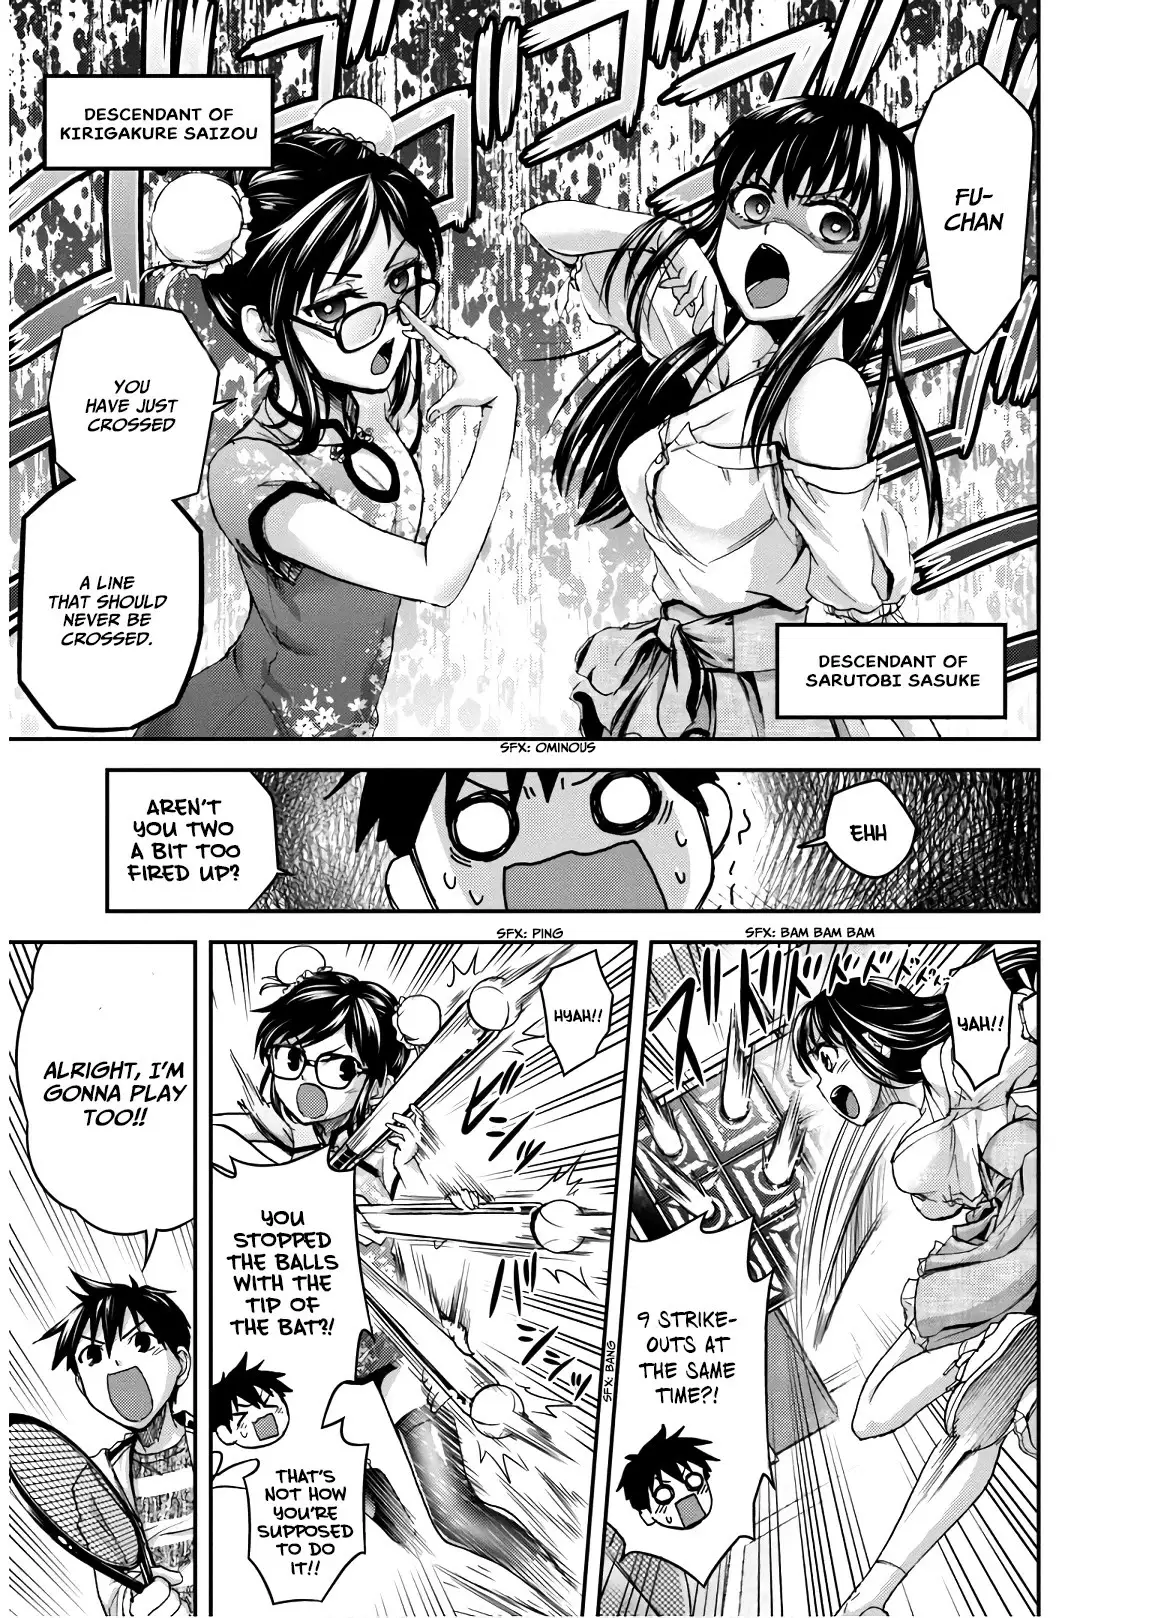 Shinobi Kill - 5 page 24